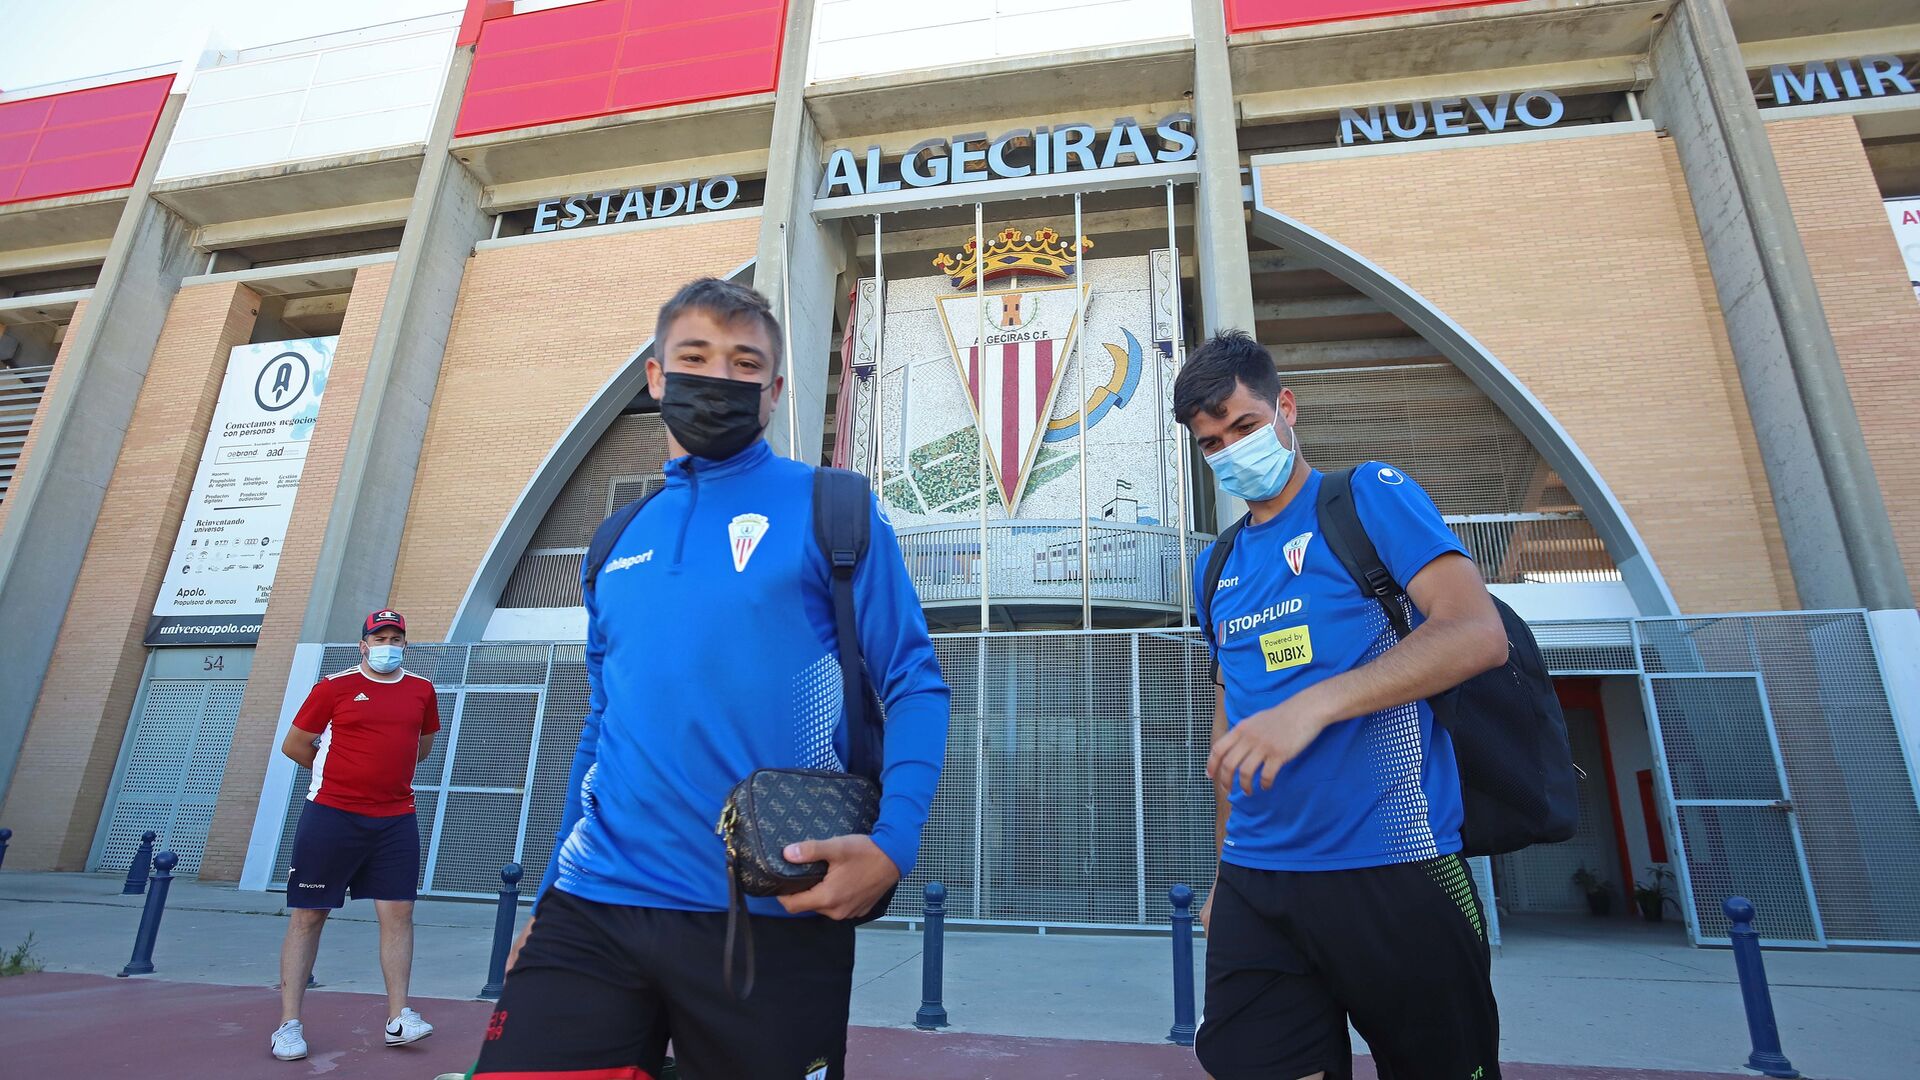 Fotos de la salida del Algeciras al playoff de ascenso de Extremadura